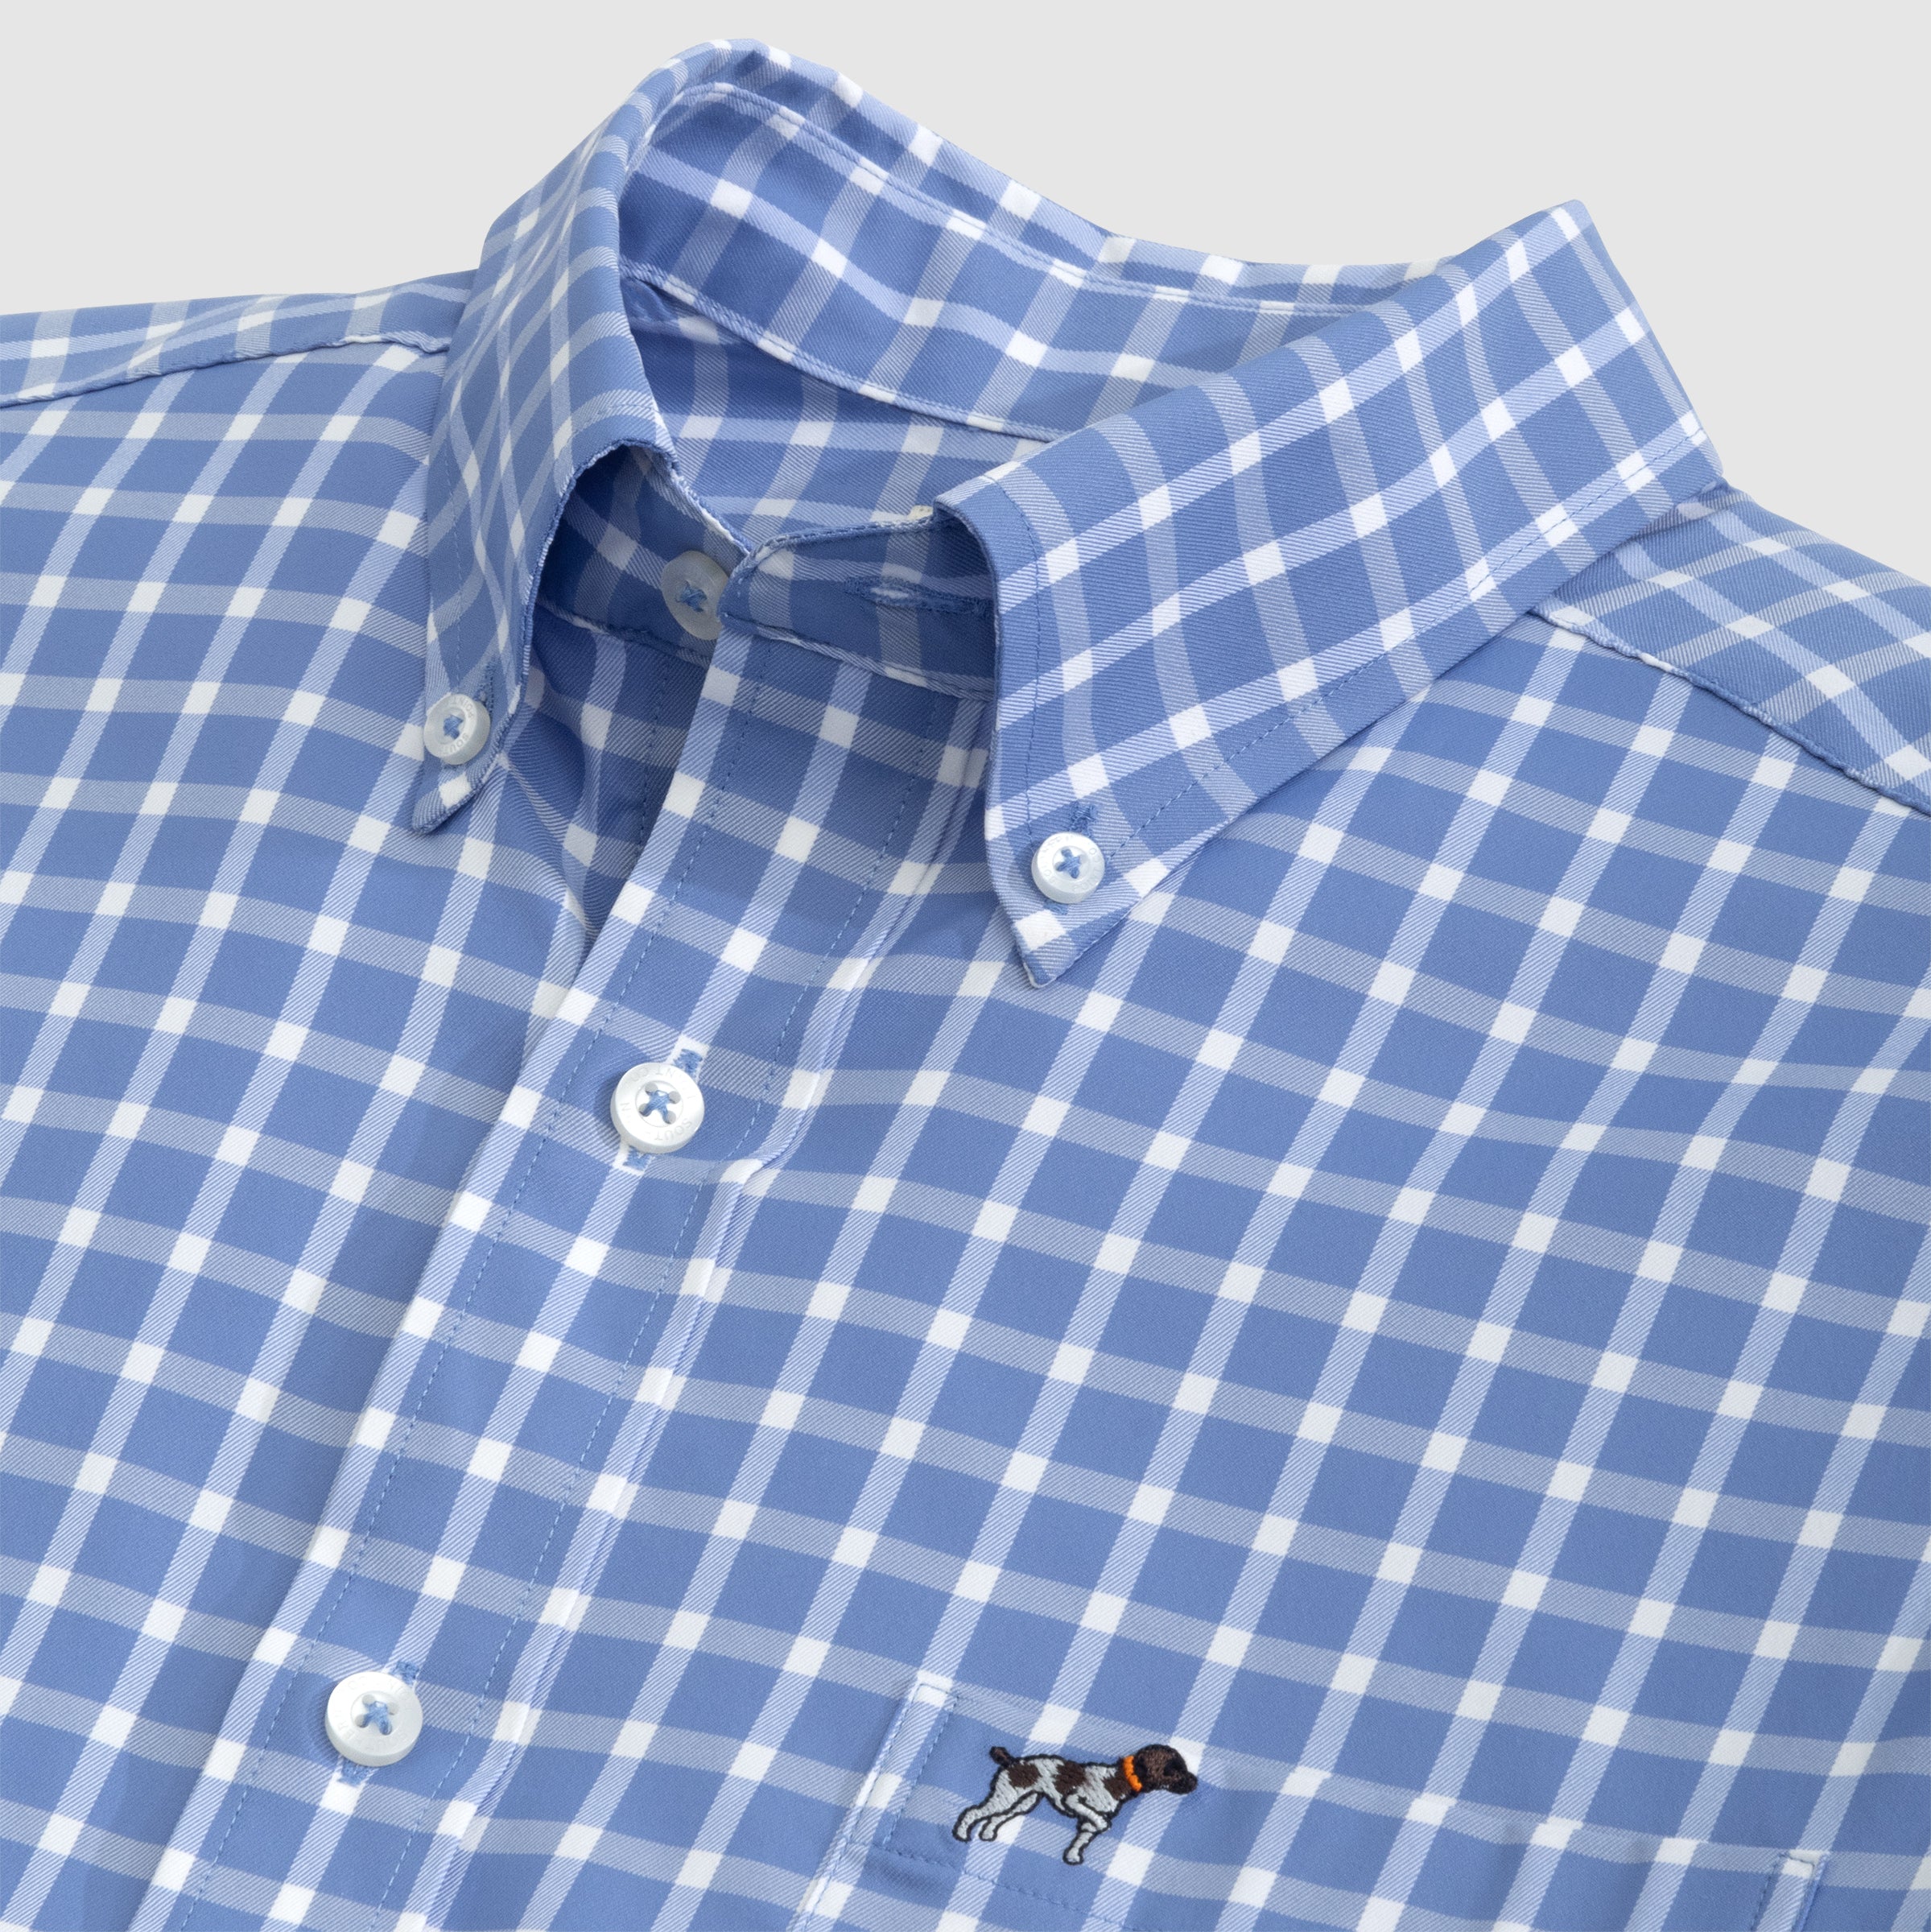 long-sleeved button-down shirt collar